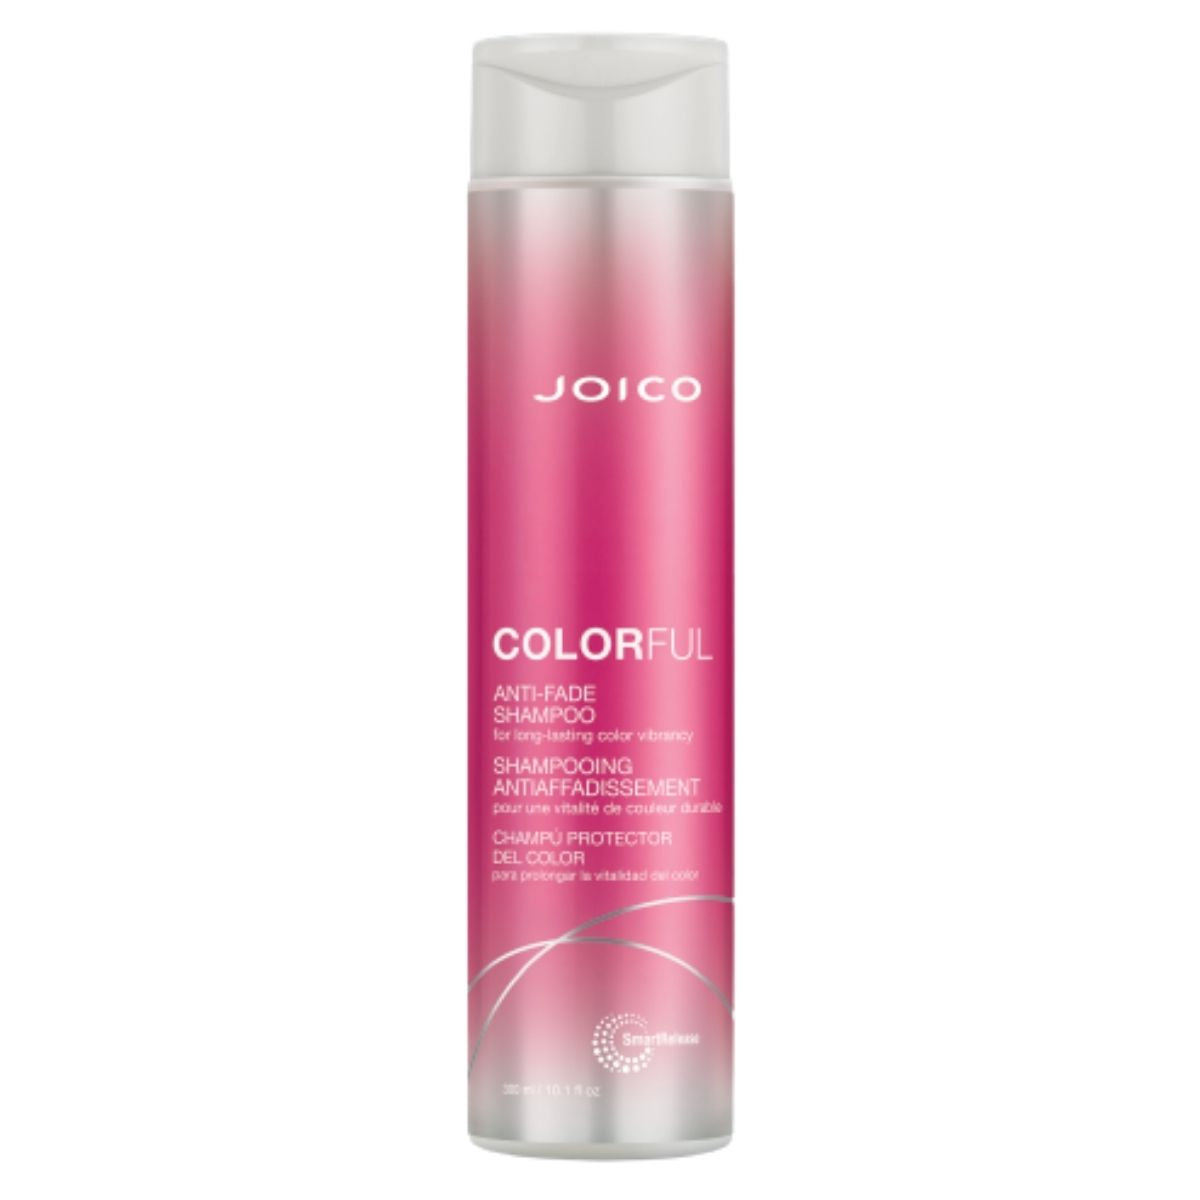 Joico Colourful Anti-Fade Shampoo